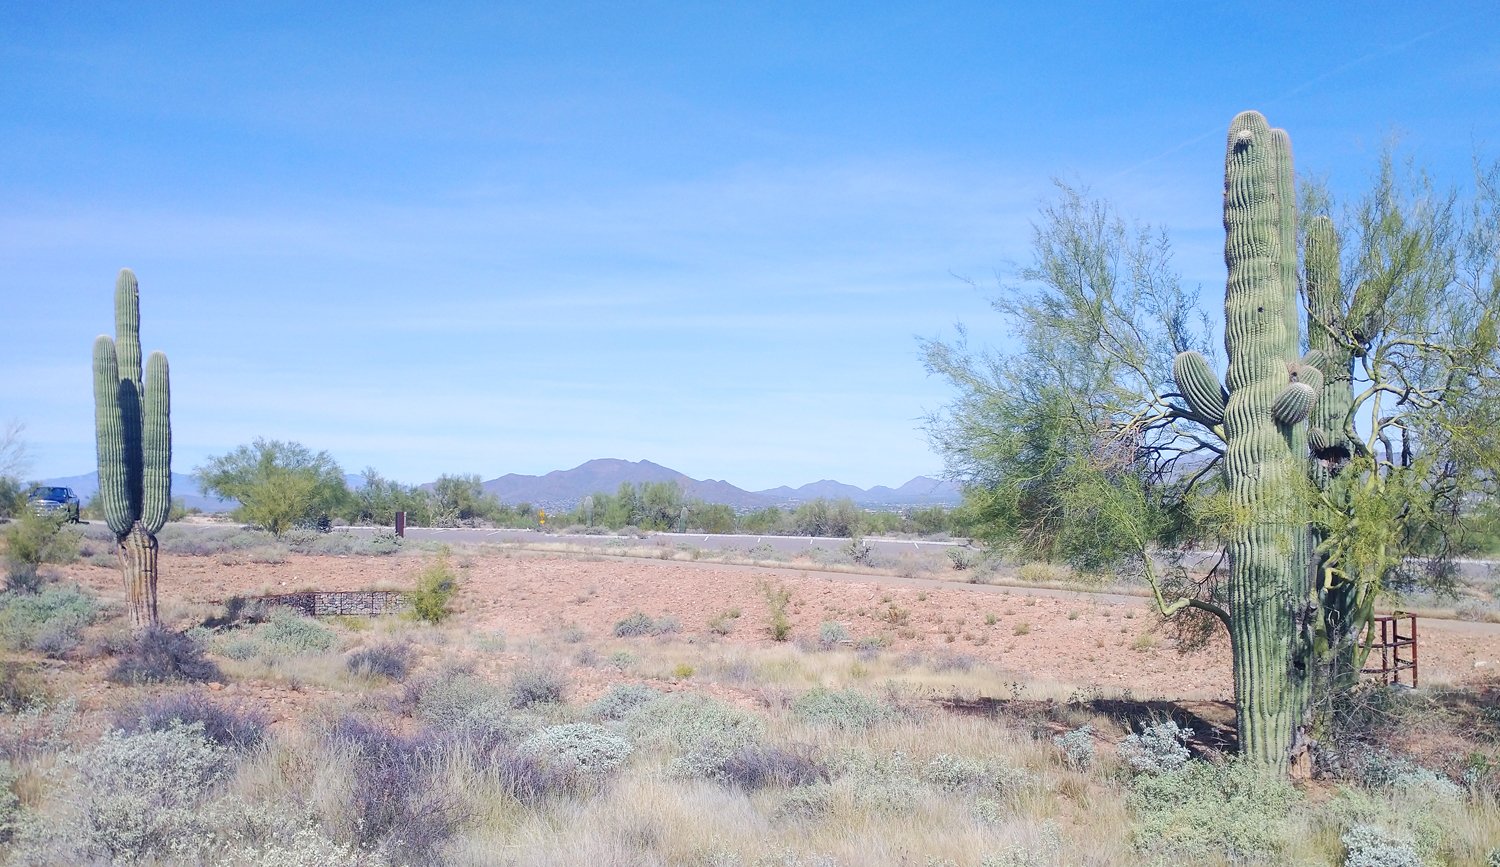 Arizona landscape. Cacti everywhere.